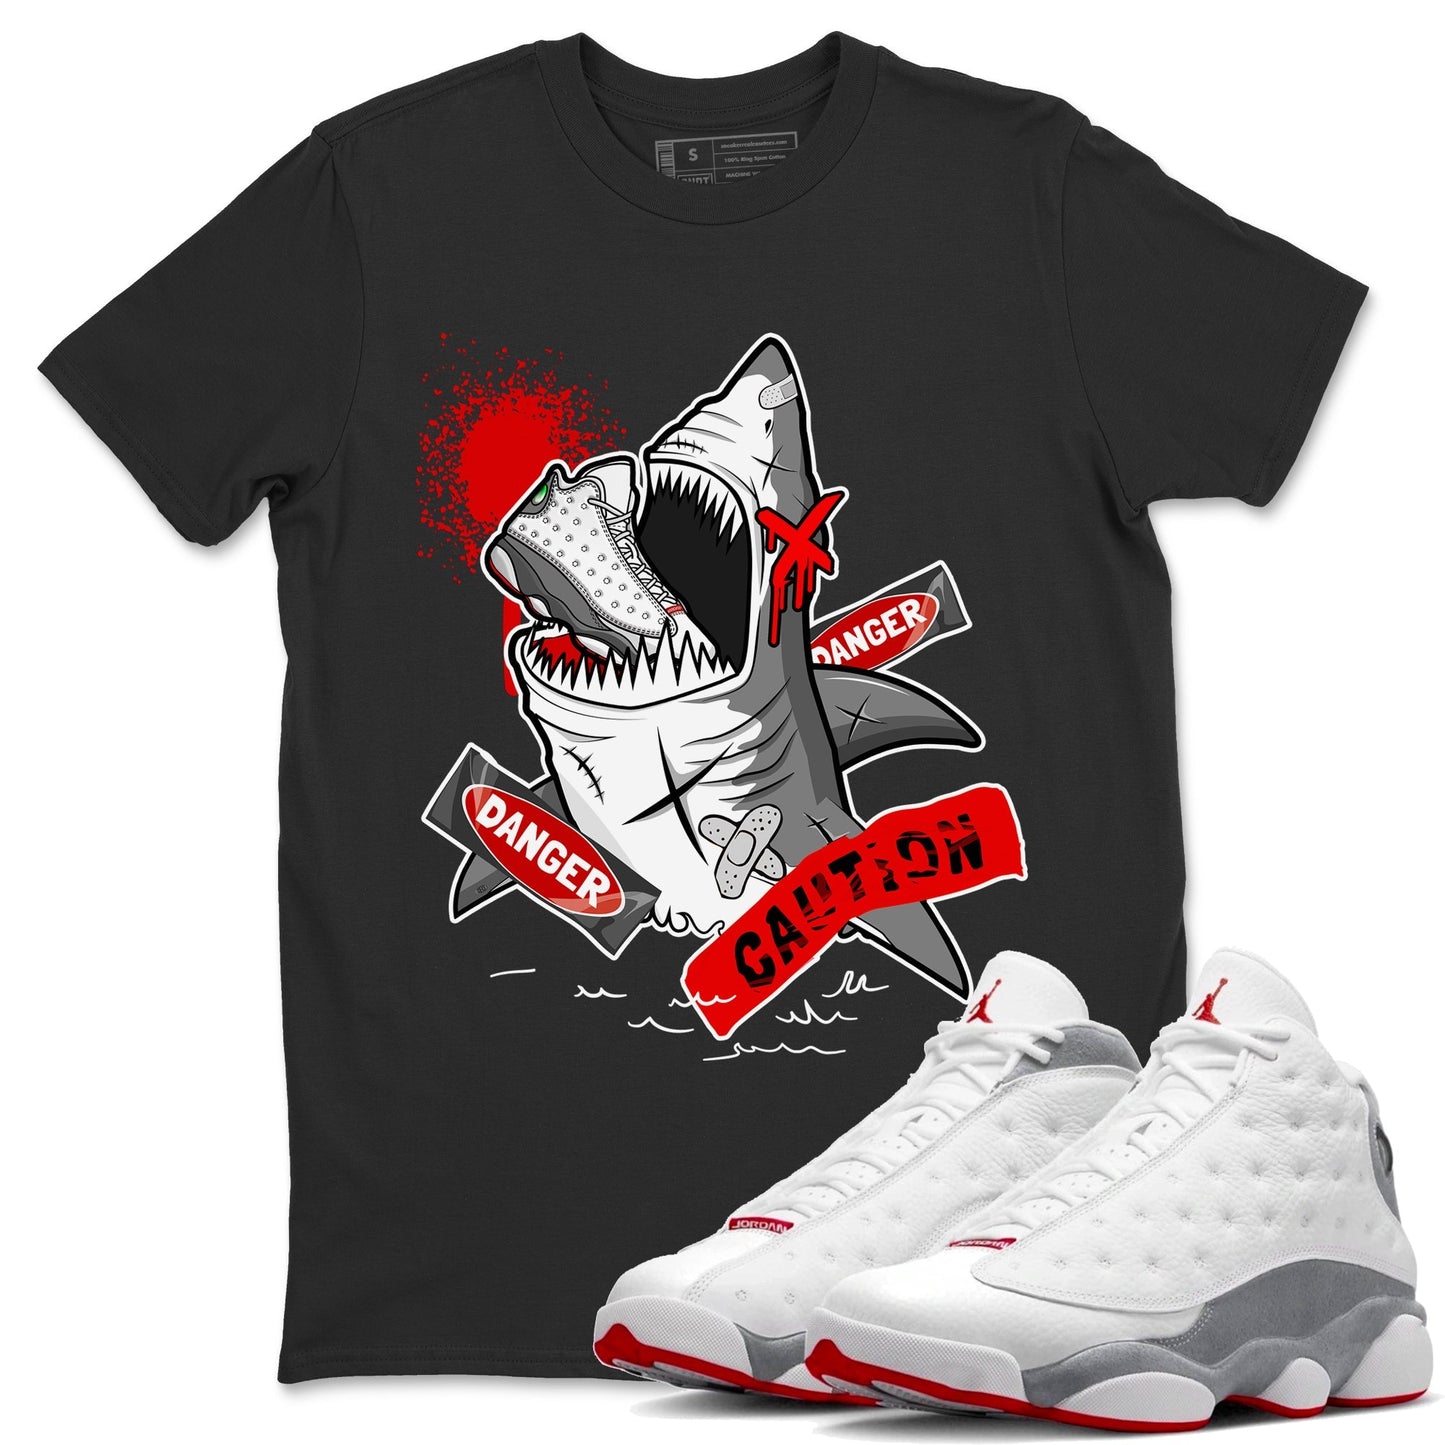 Wolf Grey 13 shirt to match jordans Dangerous Shark Streetwear Sneaker Shirt Air Jordan 13 Wolf Grey Drip Gear Zone Sneaker Matching Clothing Unisex Black 1 T-Shirt